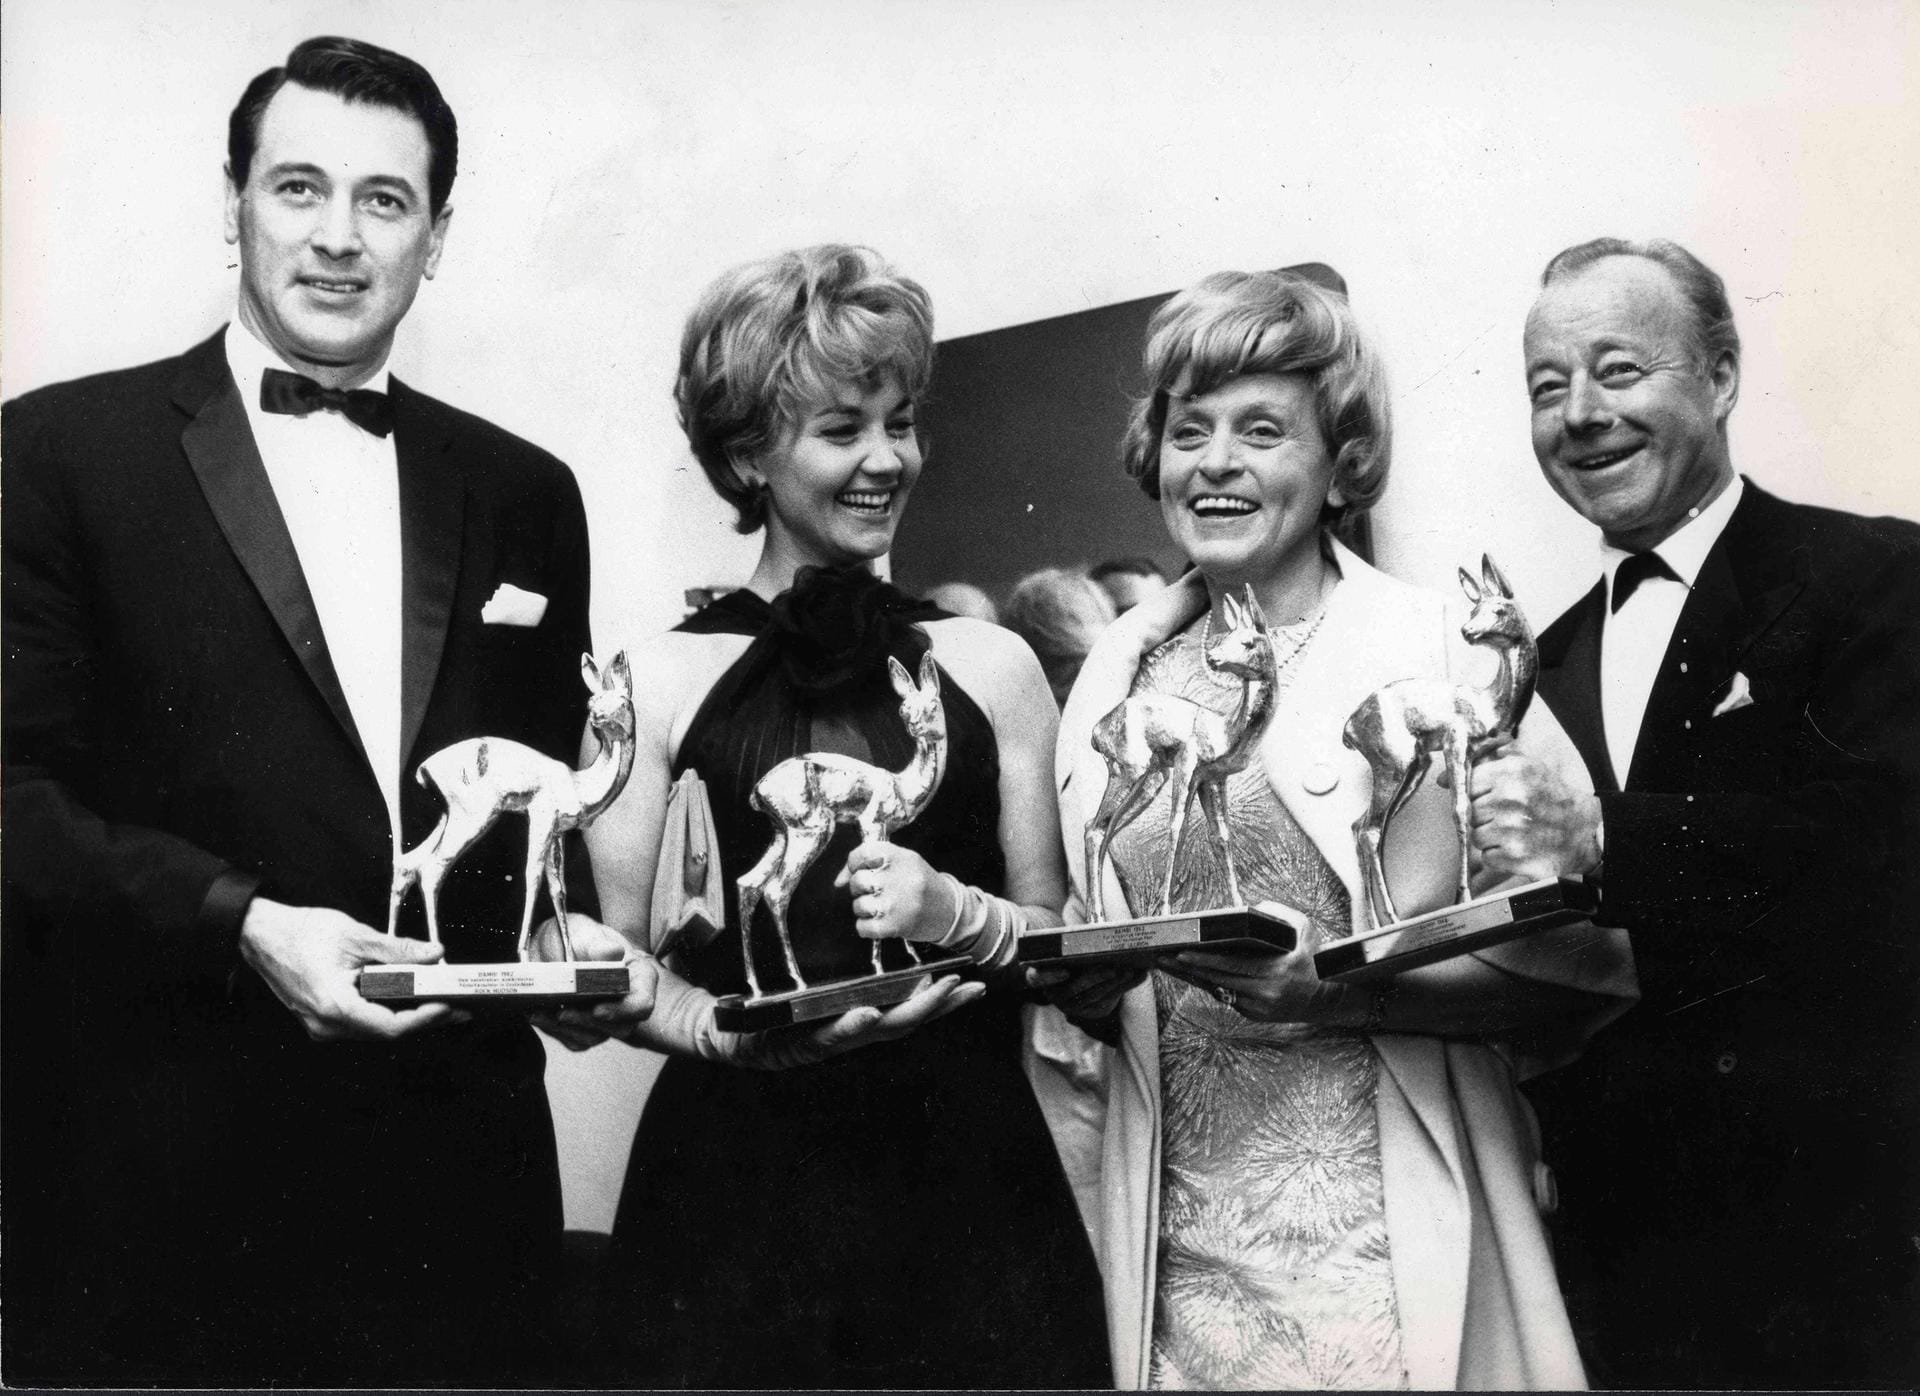 Mai 1965: Rock Hudson, Liselotte Pulver, Luise Ullrich und Heinz Rühmann werden mit dem Bambi ausgezeichnet. Zu diesem Zeitpunkt bekommt sie ihn bereits zum dritten Mal.